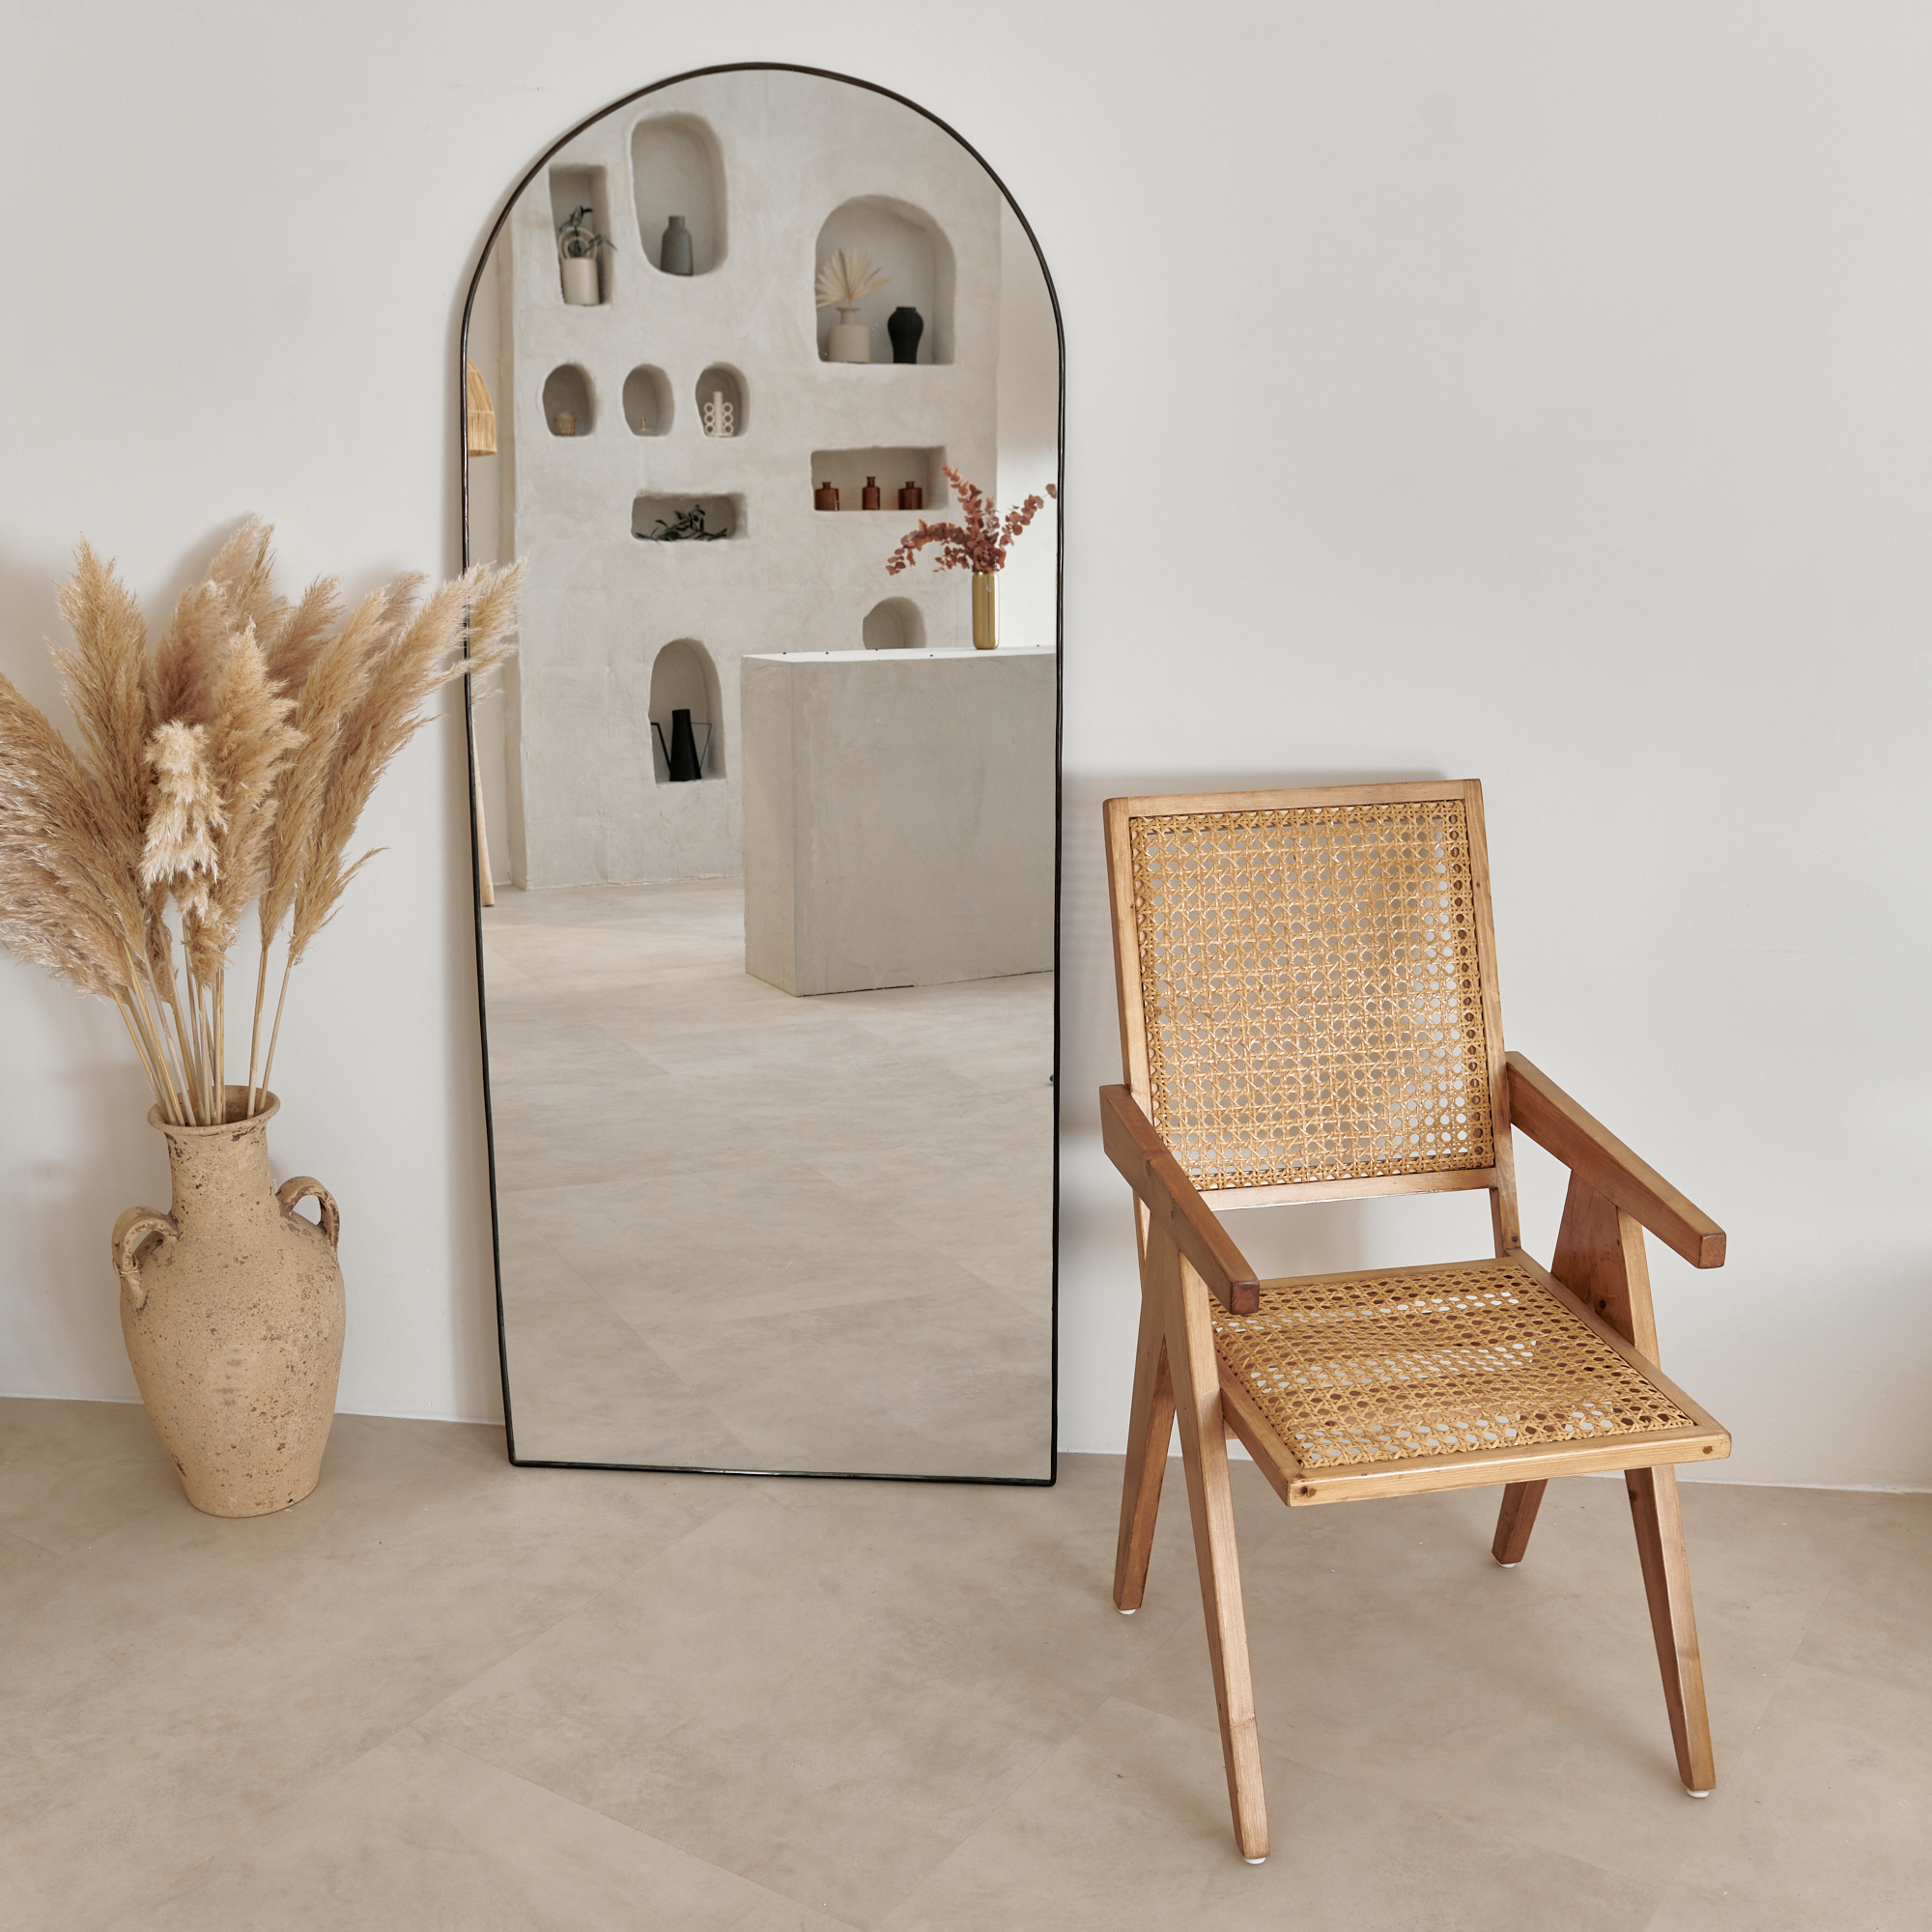 Miroir arche - Charbon » Nomad Interior